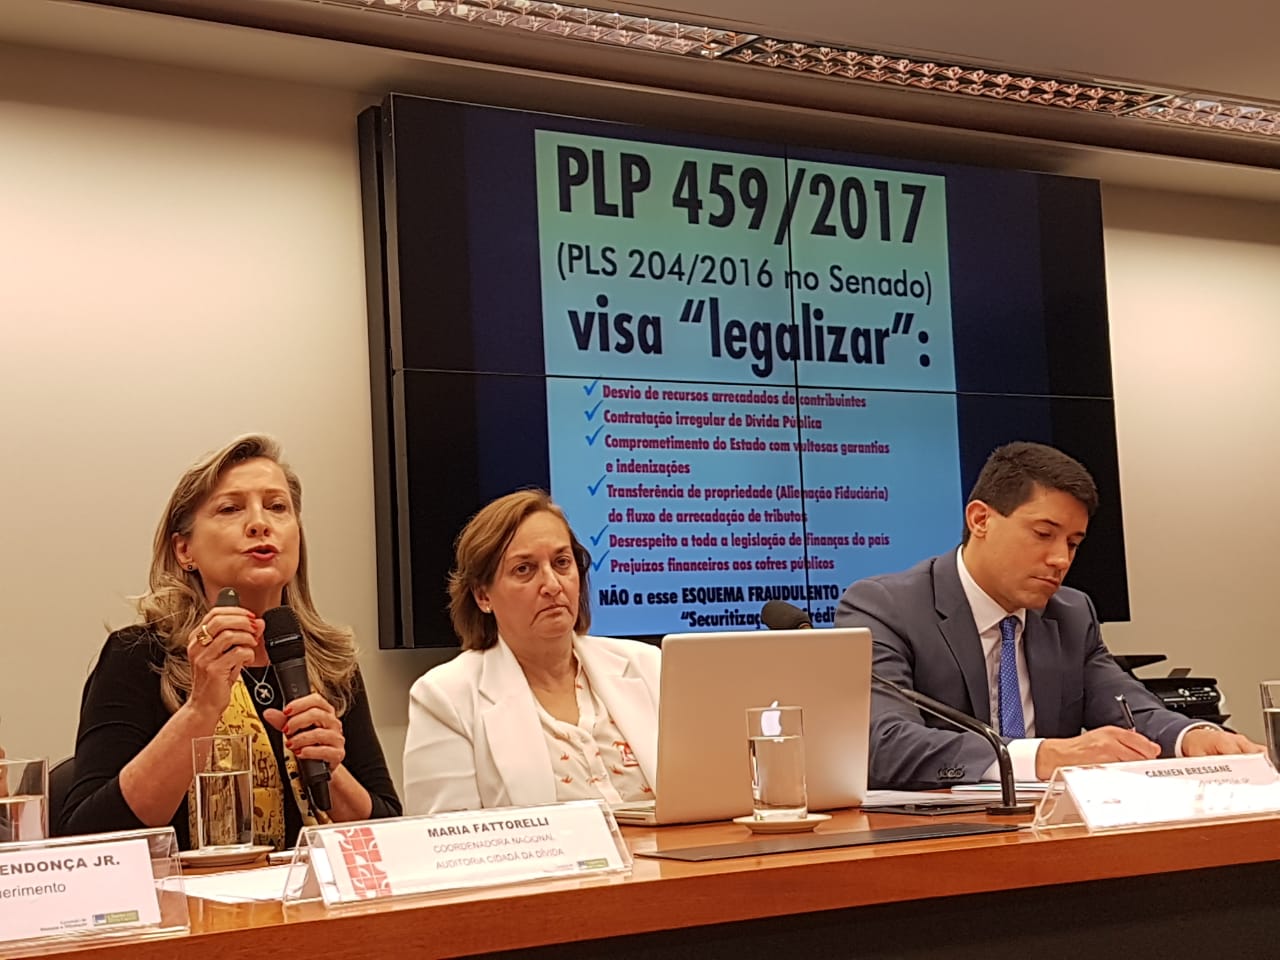 Fattorelli fala sobre PLP 459/2017 em Audiência Pública na Câmara dos Deputados